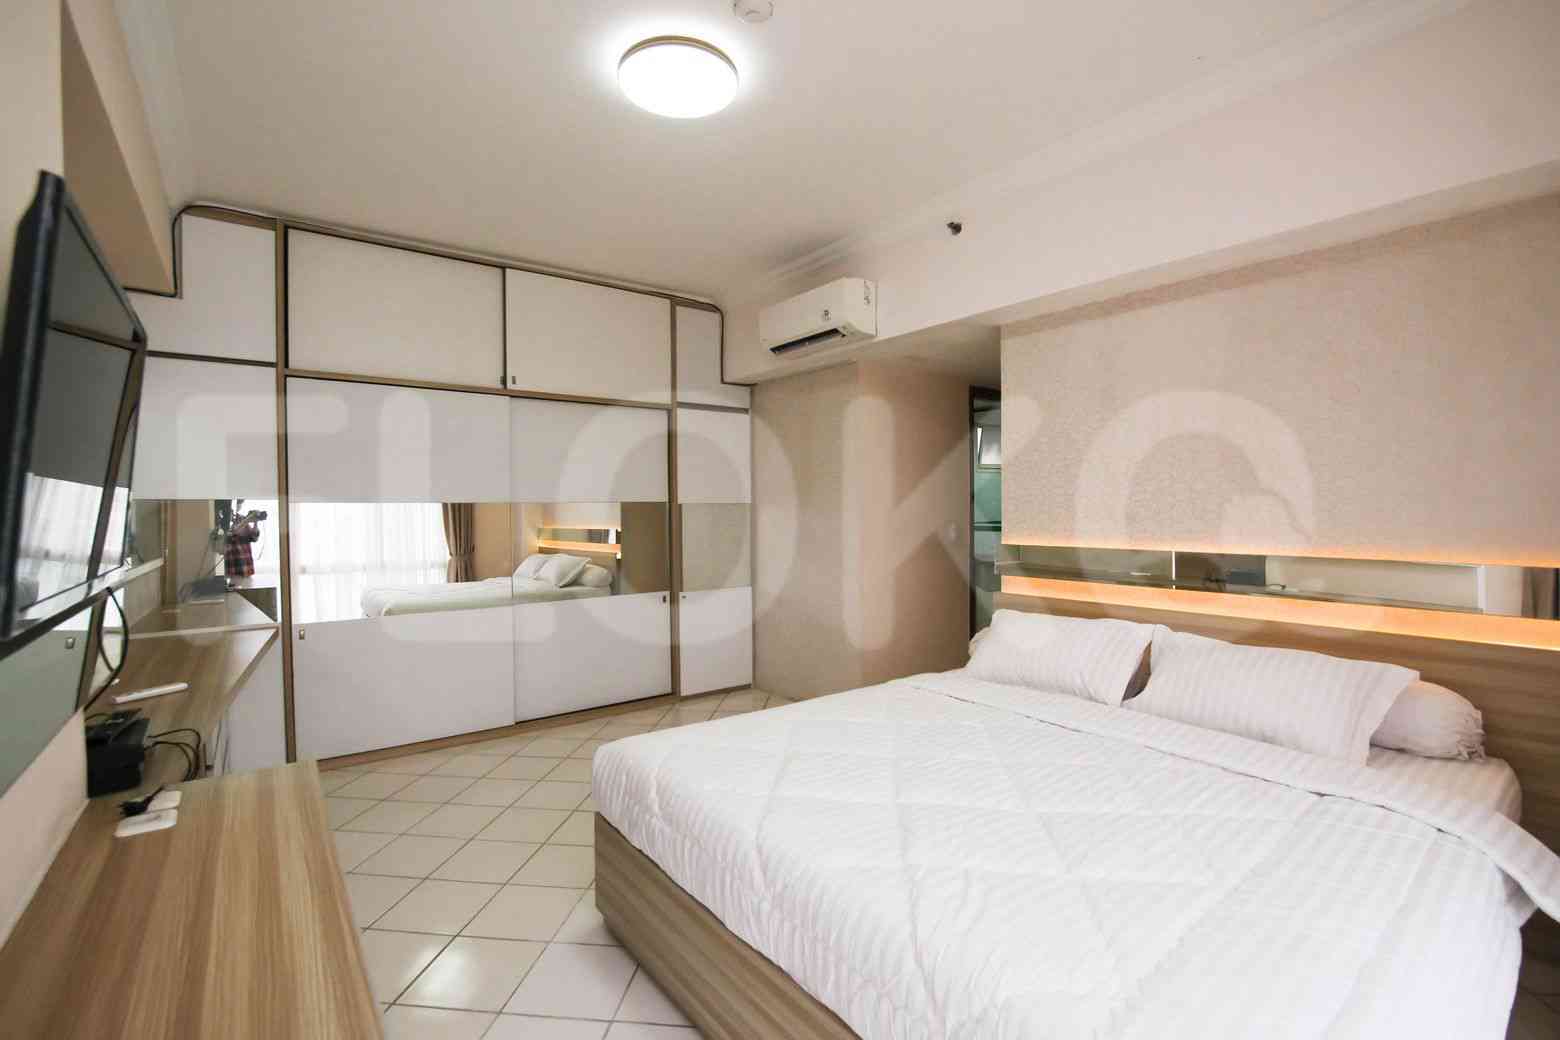 2 Bedroom on 21st Floor for Rent in Puri Casablanca - fte68b 5